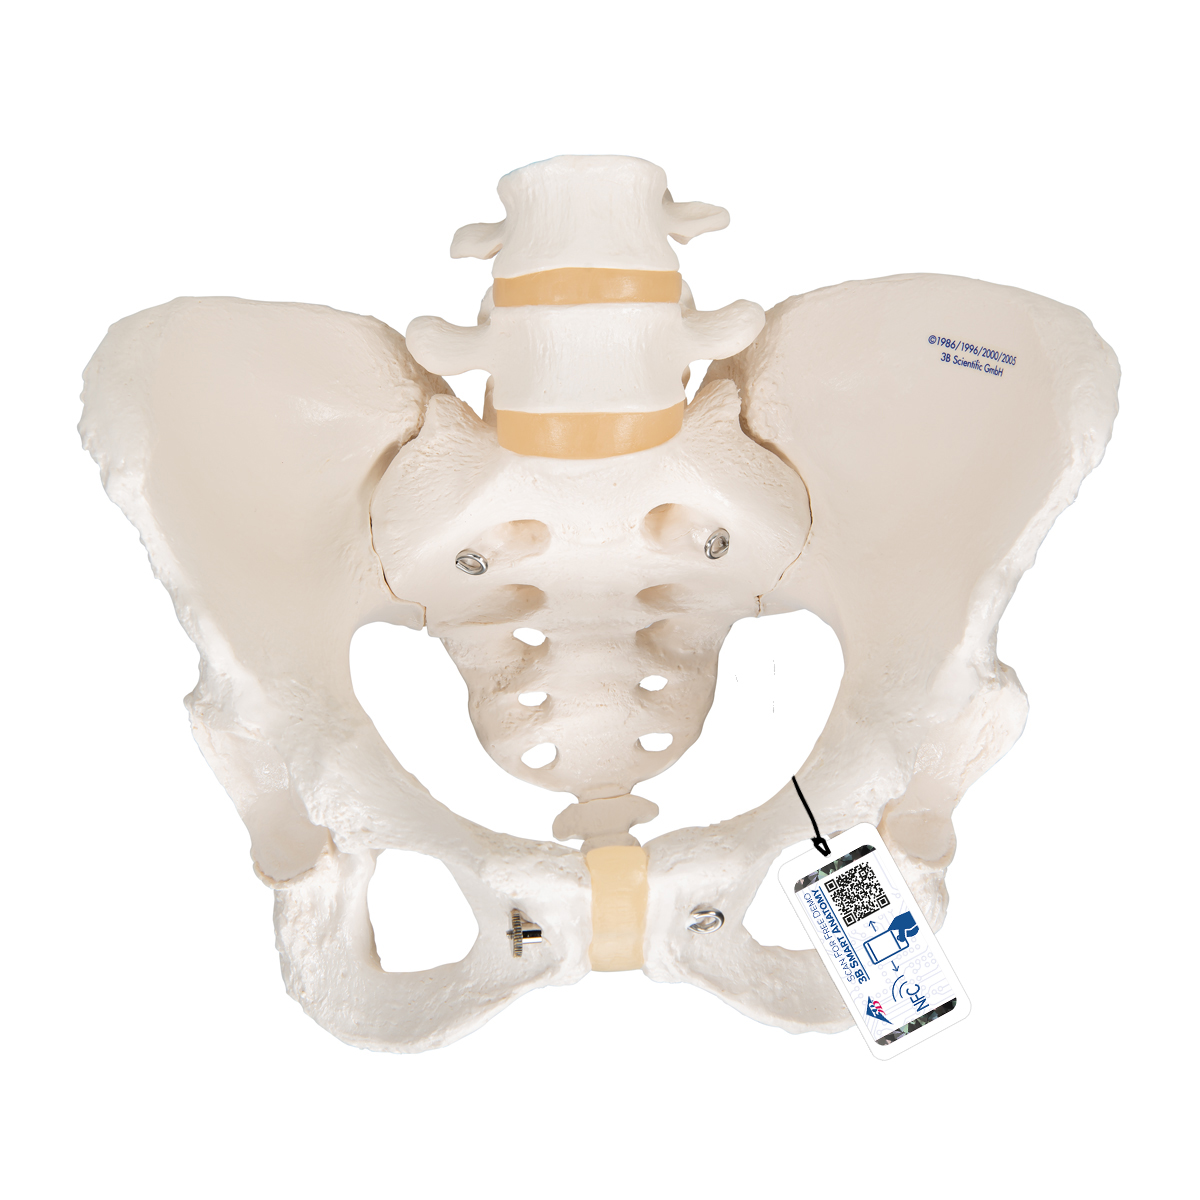 Becken-Skelett Modell, weiblich - 3B Smart Anatomy, Bestellnummer 1000134, A61, 3B Scientific